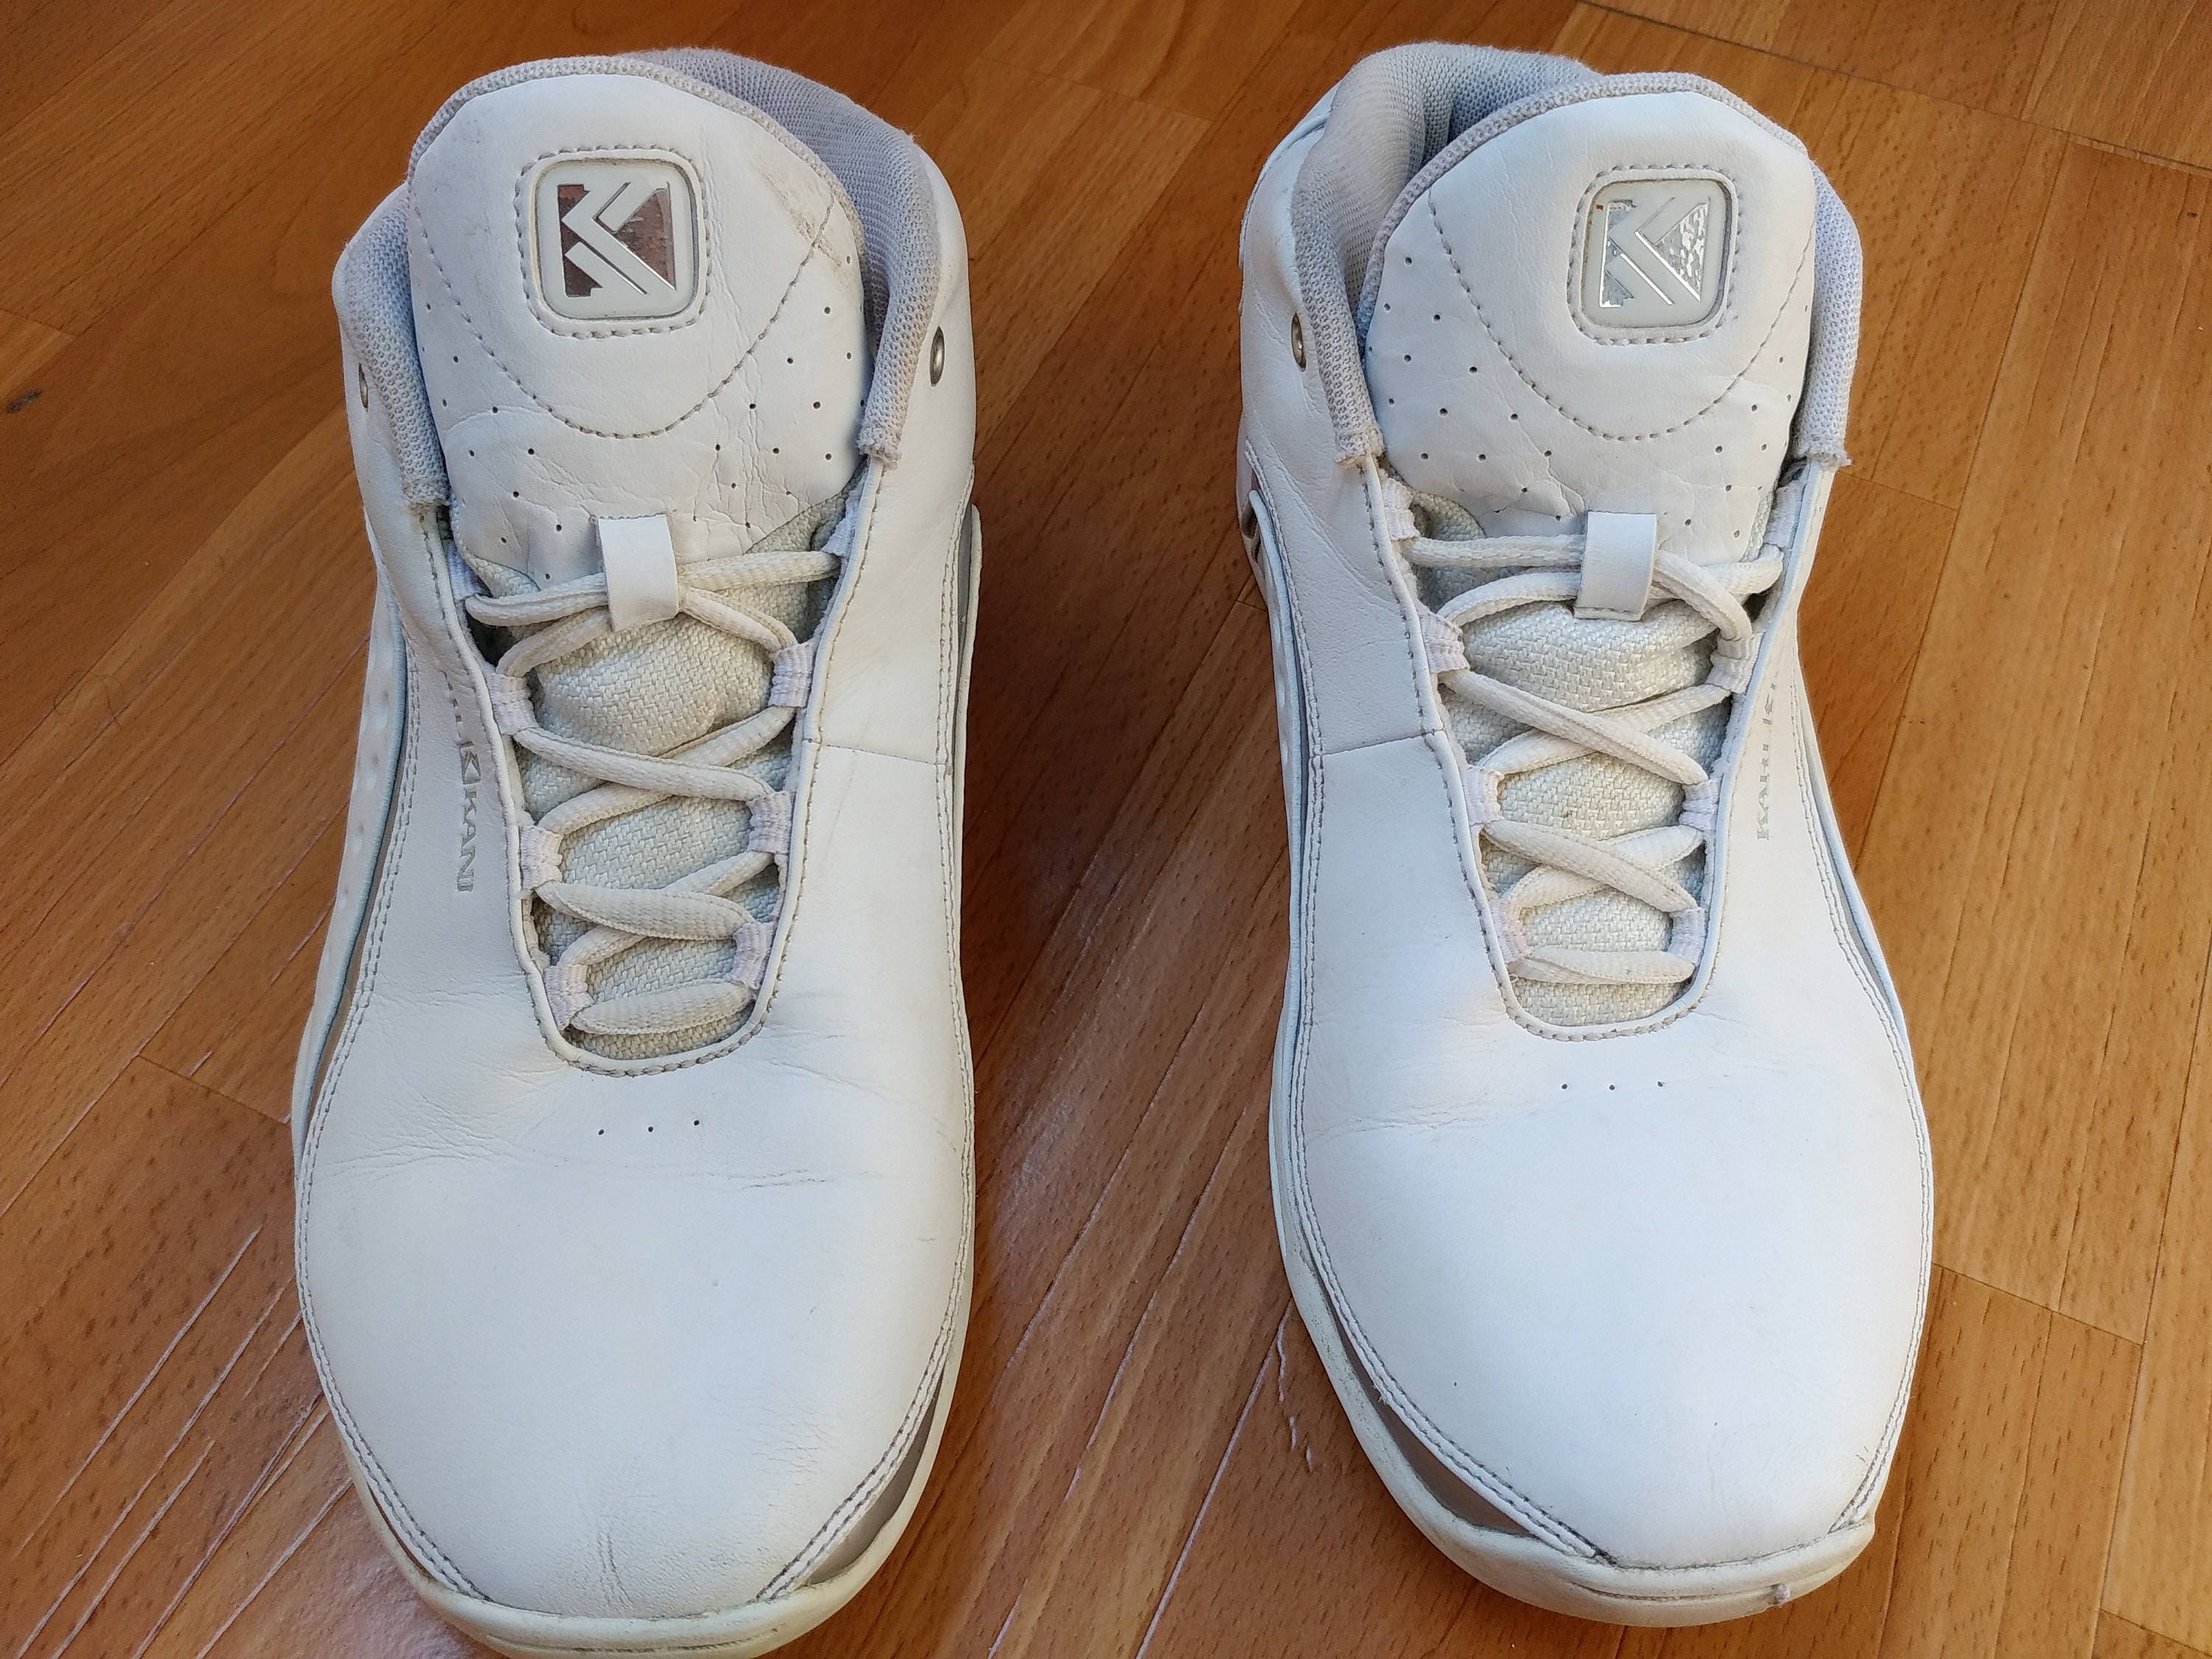 KARL KANI sneakers vintage hip hop shoes 90s hip-hop | Etsy